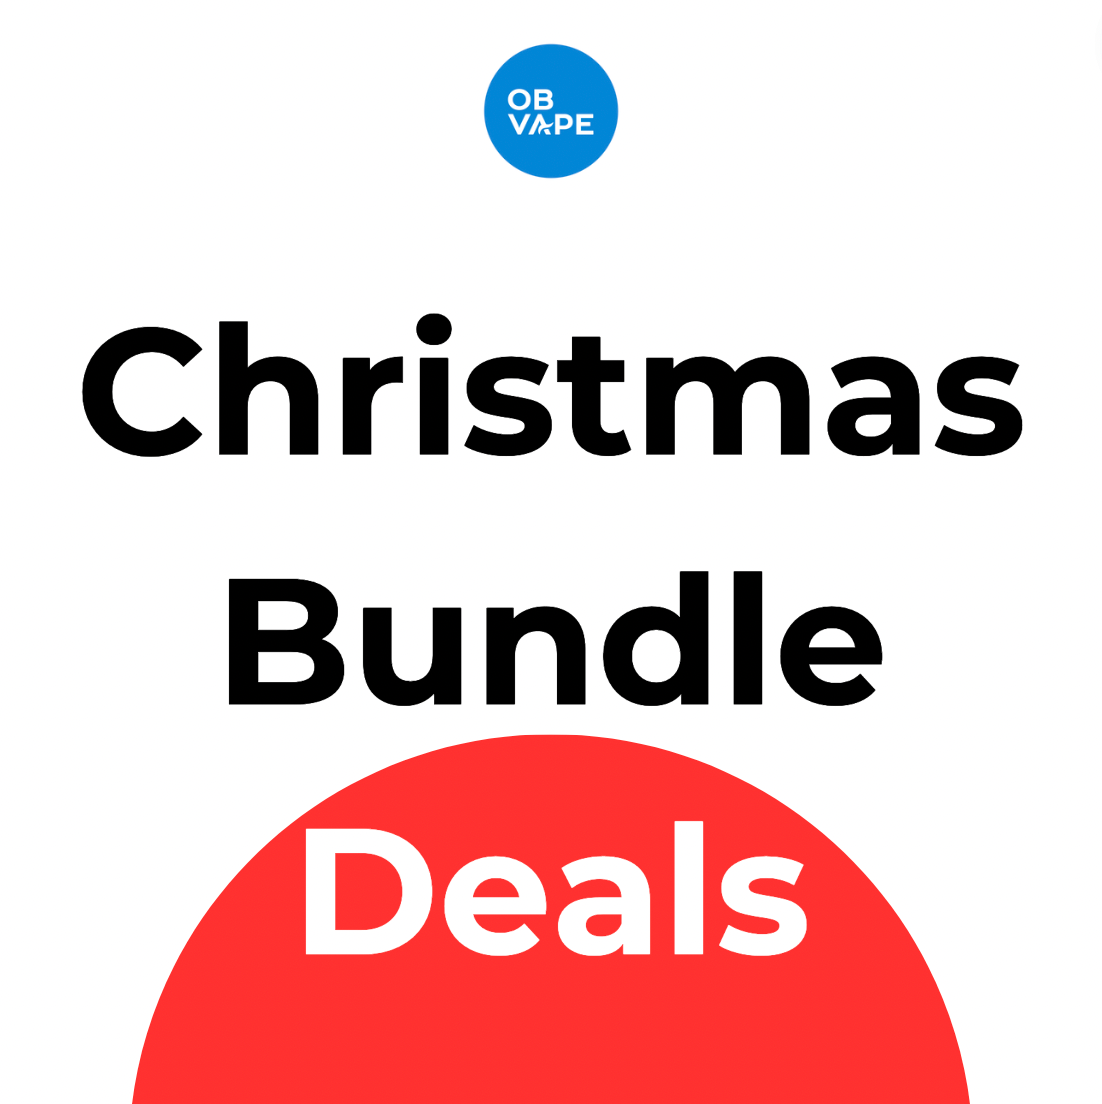 Christmas Bundle Deals